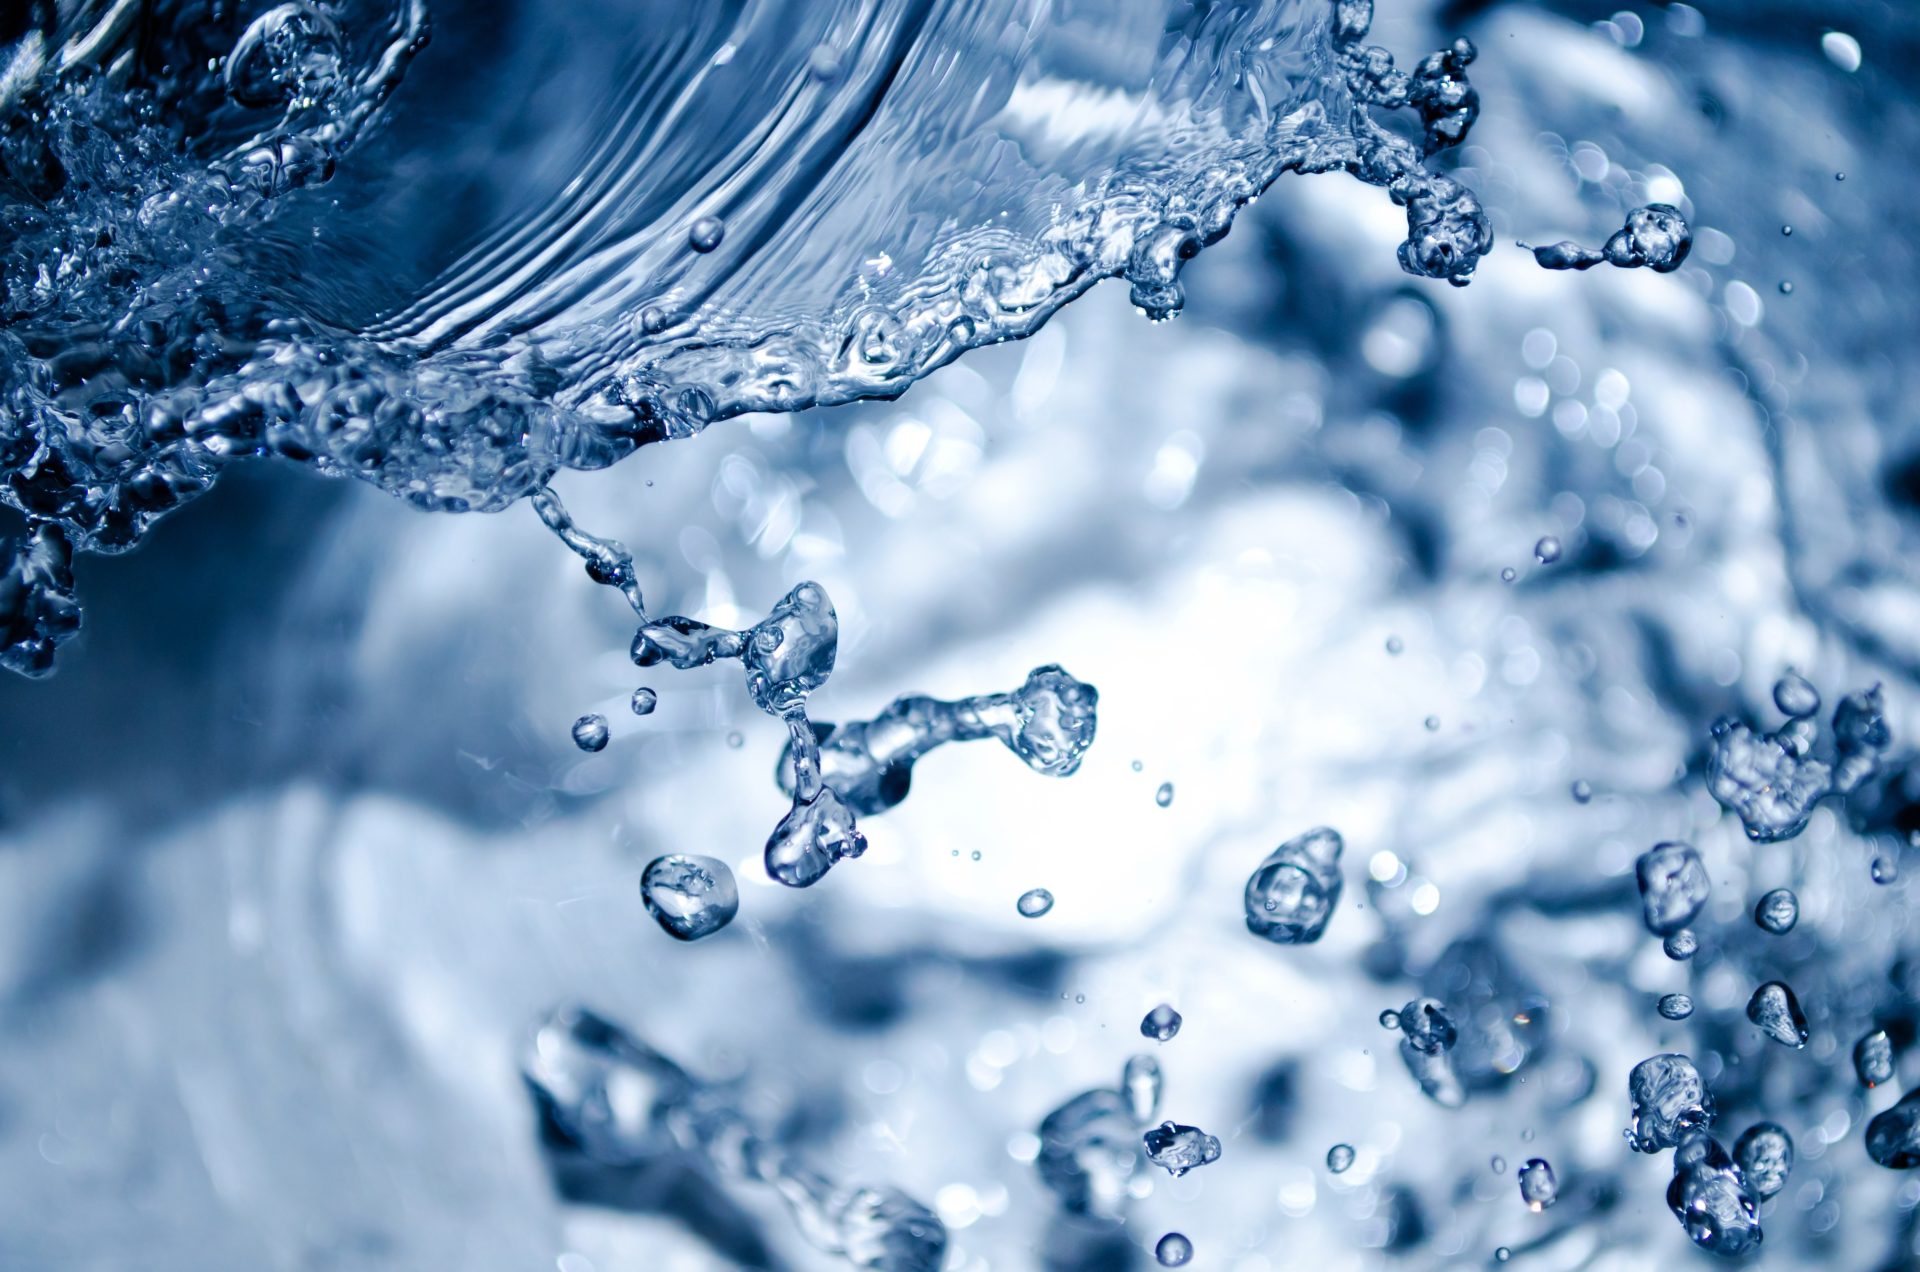 Wasser, Luftblasen, Ozonbehandlung